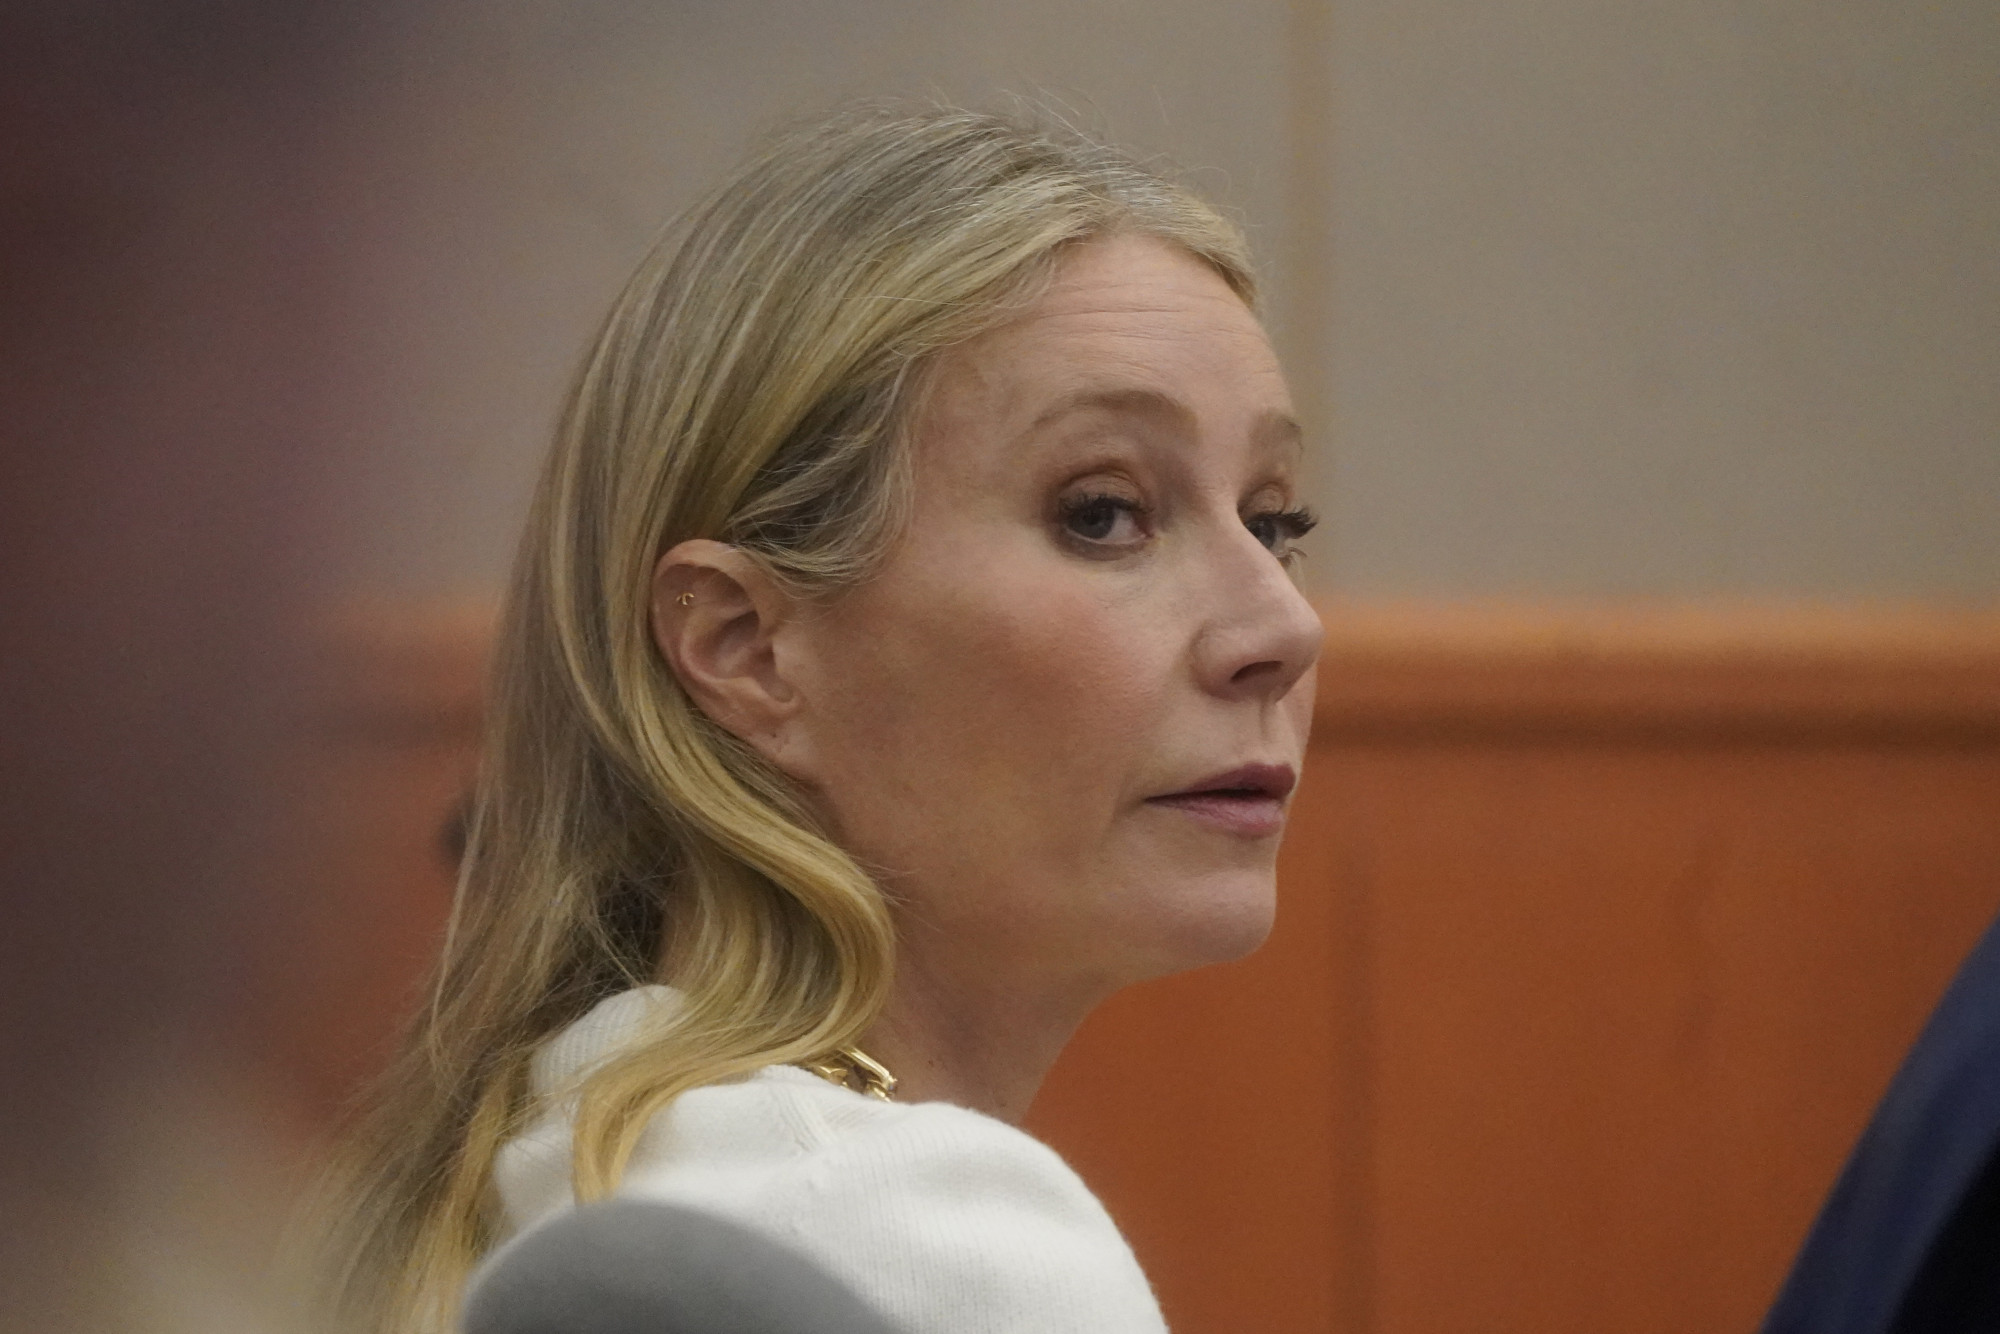 Egy síbaleset miatt állt bíróság elé Gwyneth Paltrow